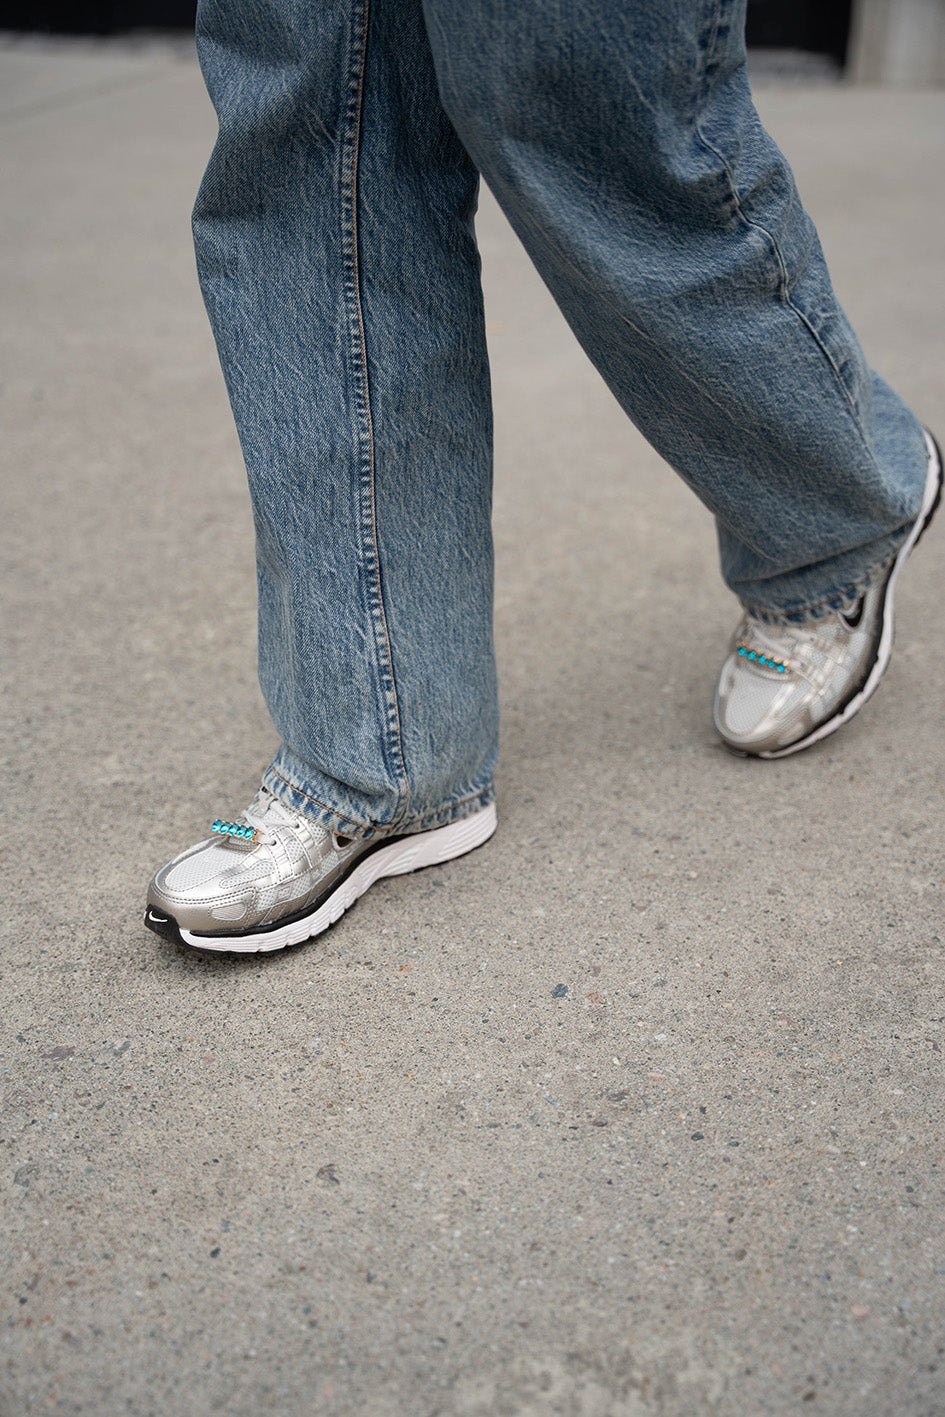 Modell med BILLIE Shoe bling i turkis på skoene